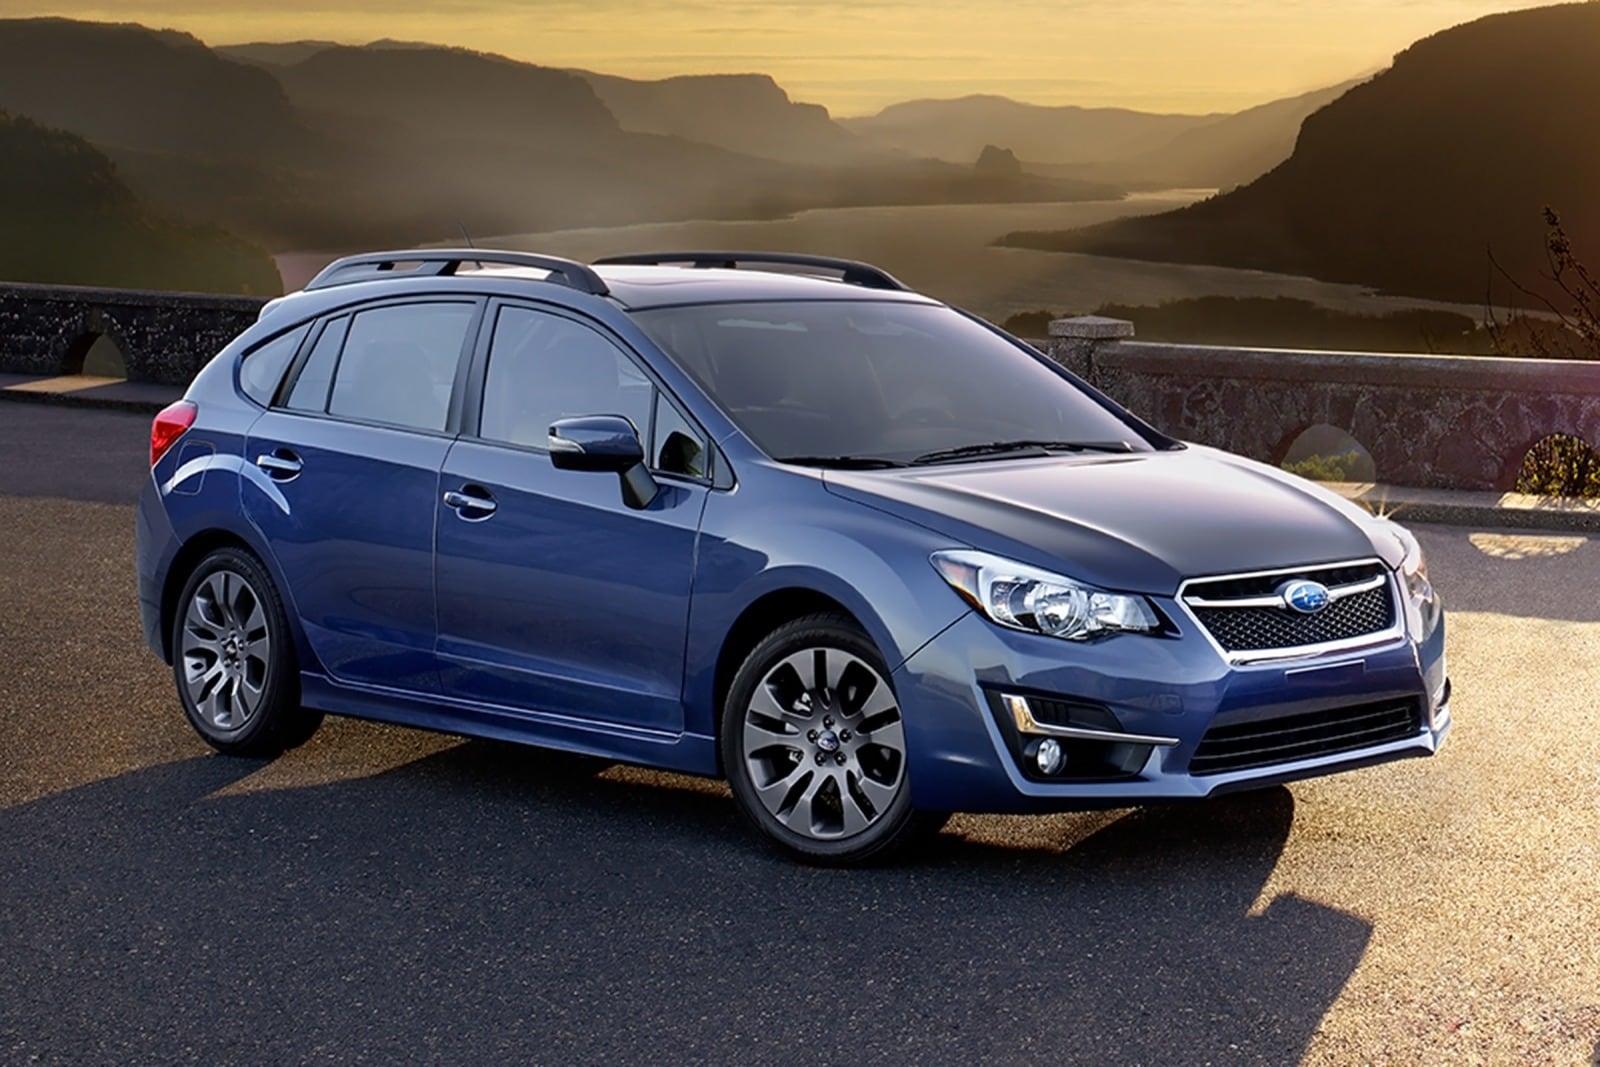 Used 2016 Subaru Impreza Hatchback Review | Edmunds